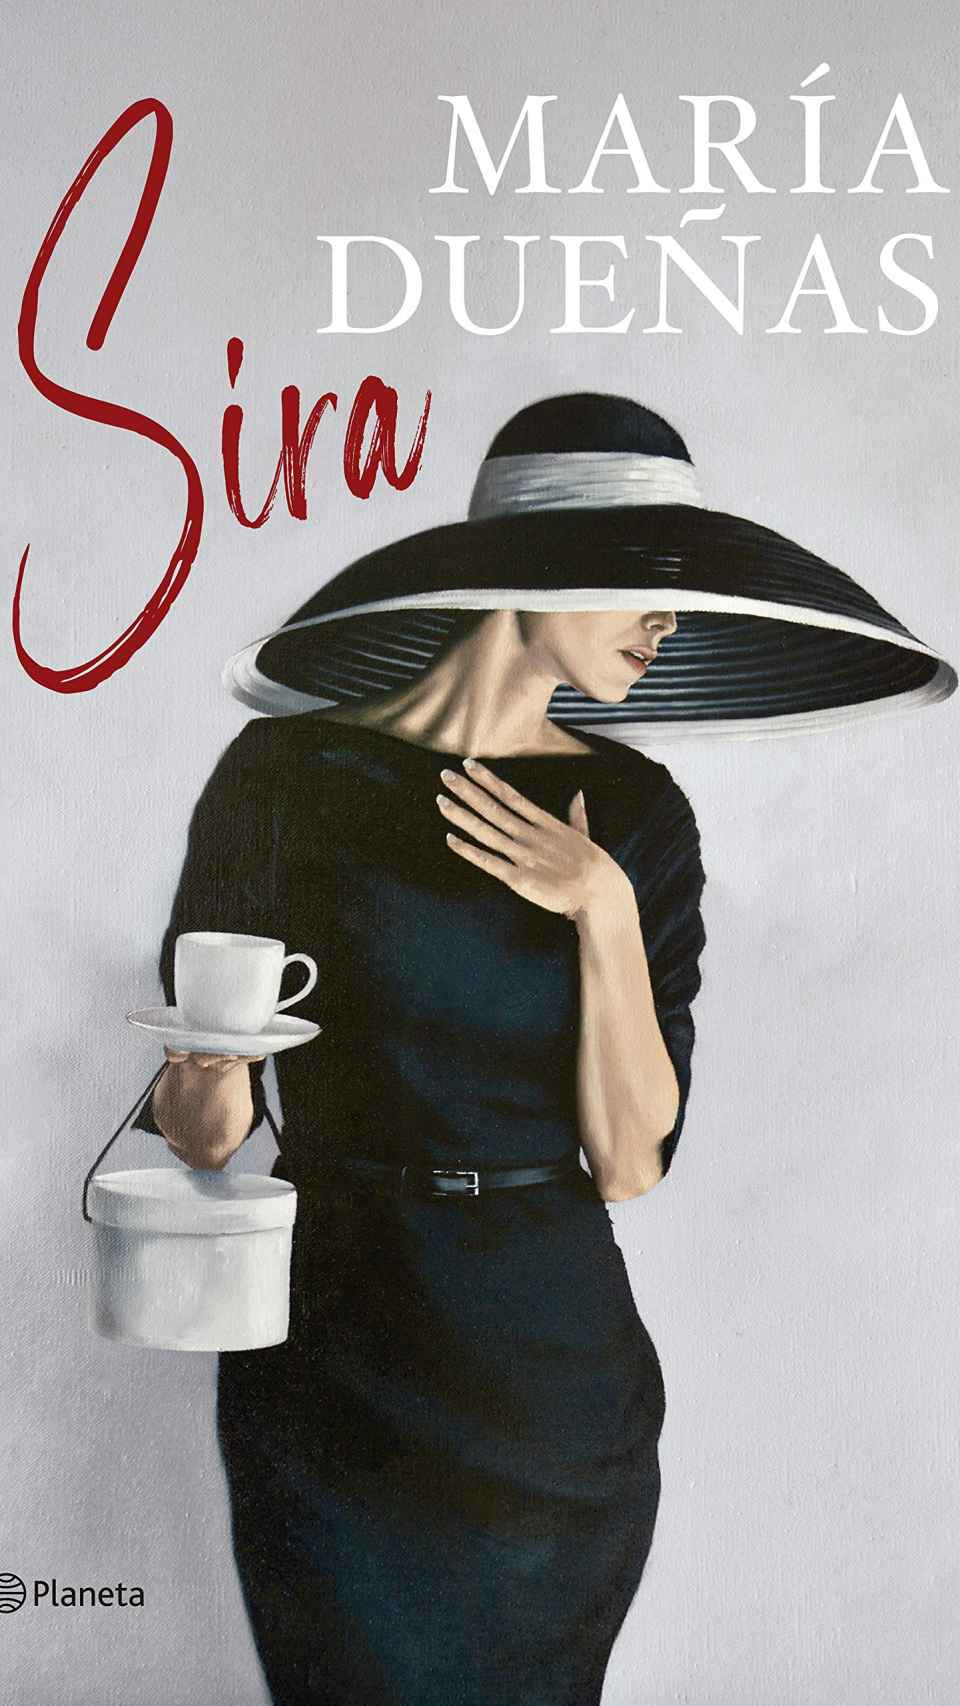 'Sira'